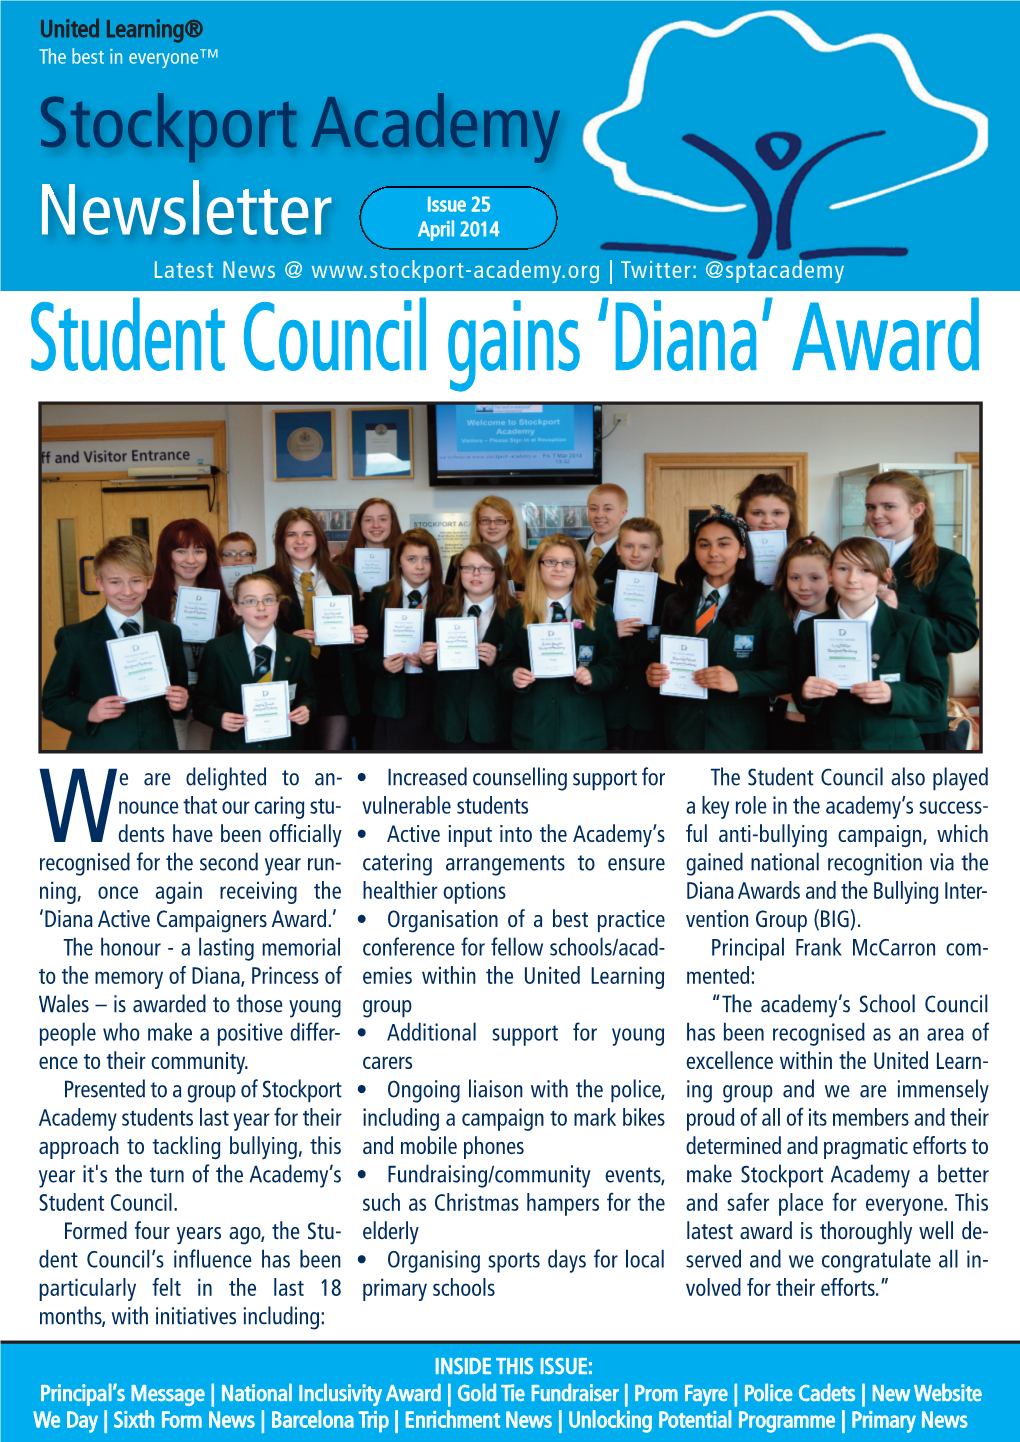 Student Council Gains 'Diana' Award